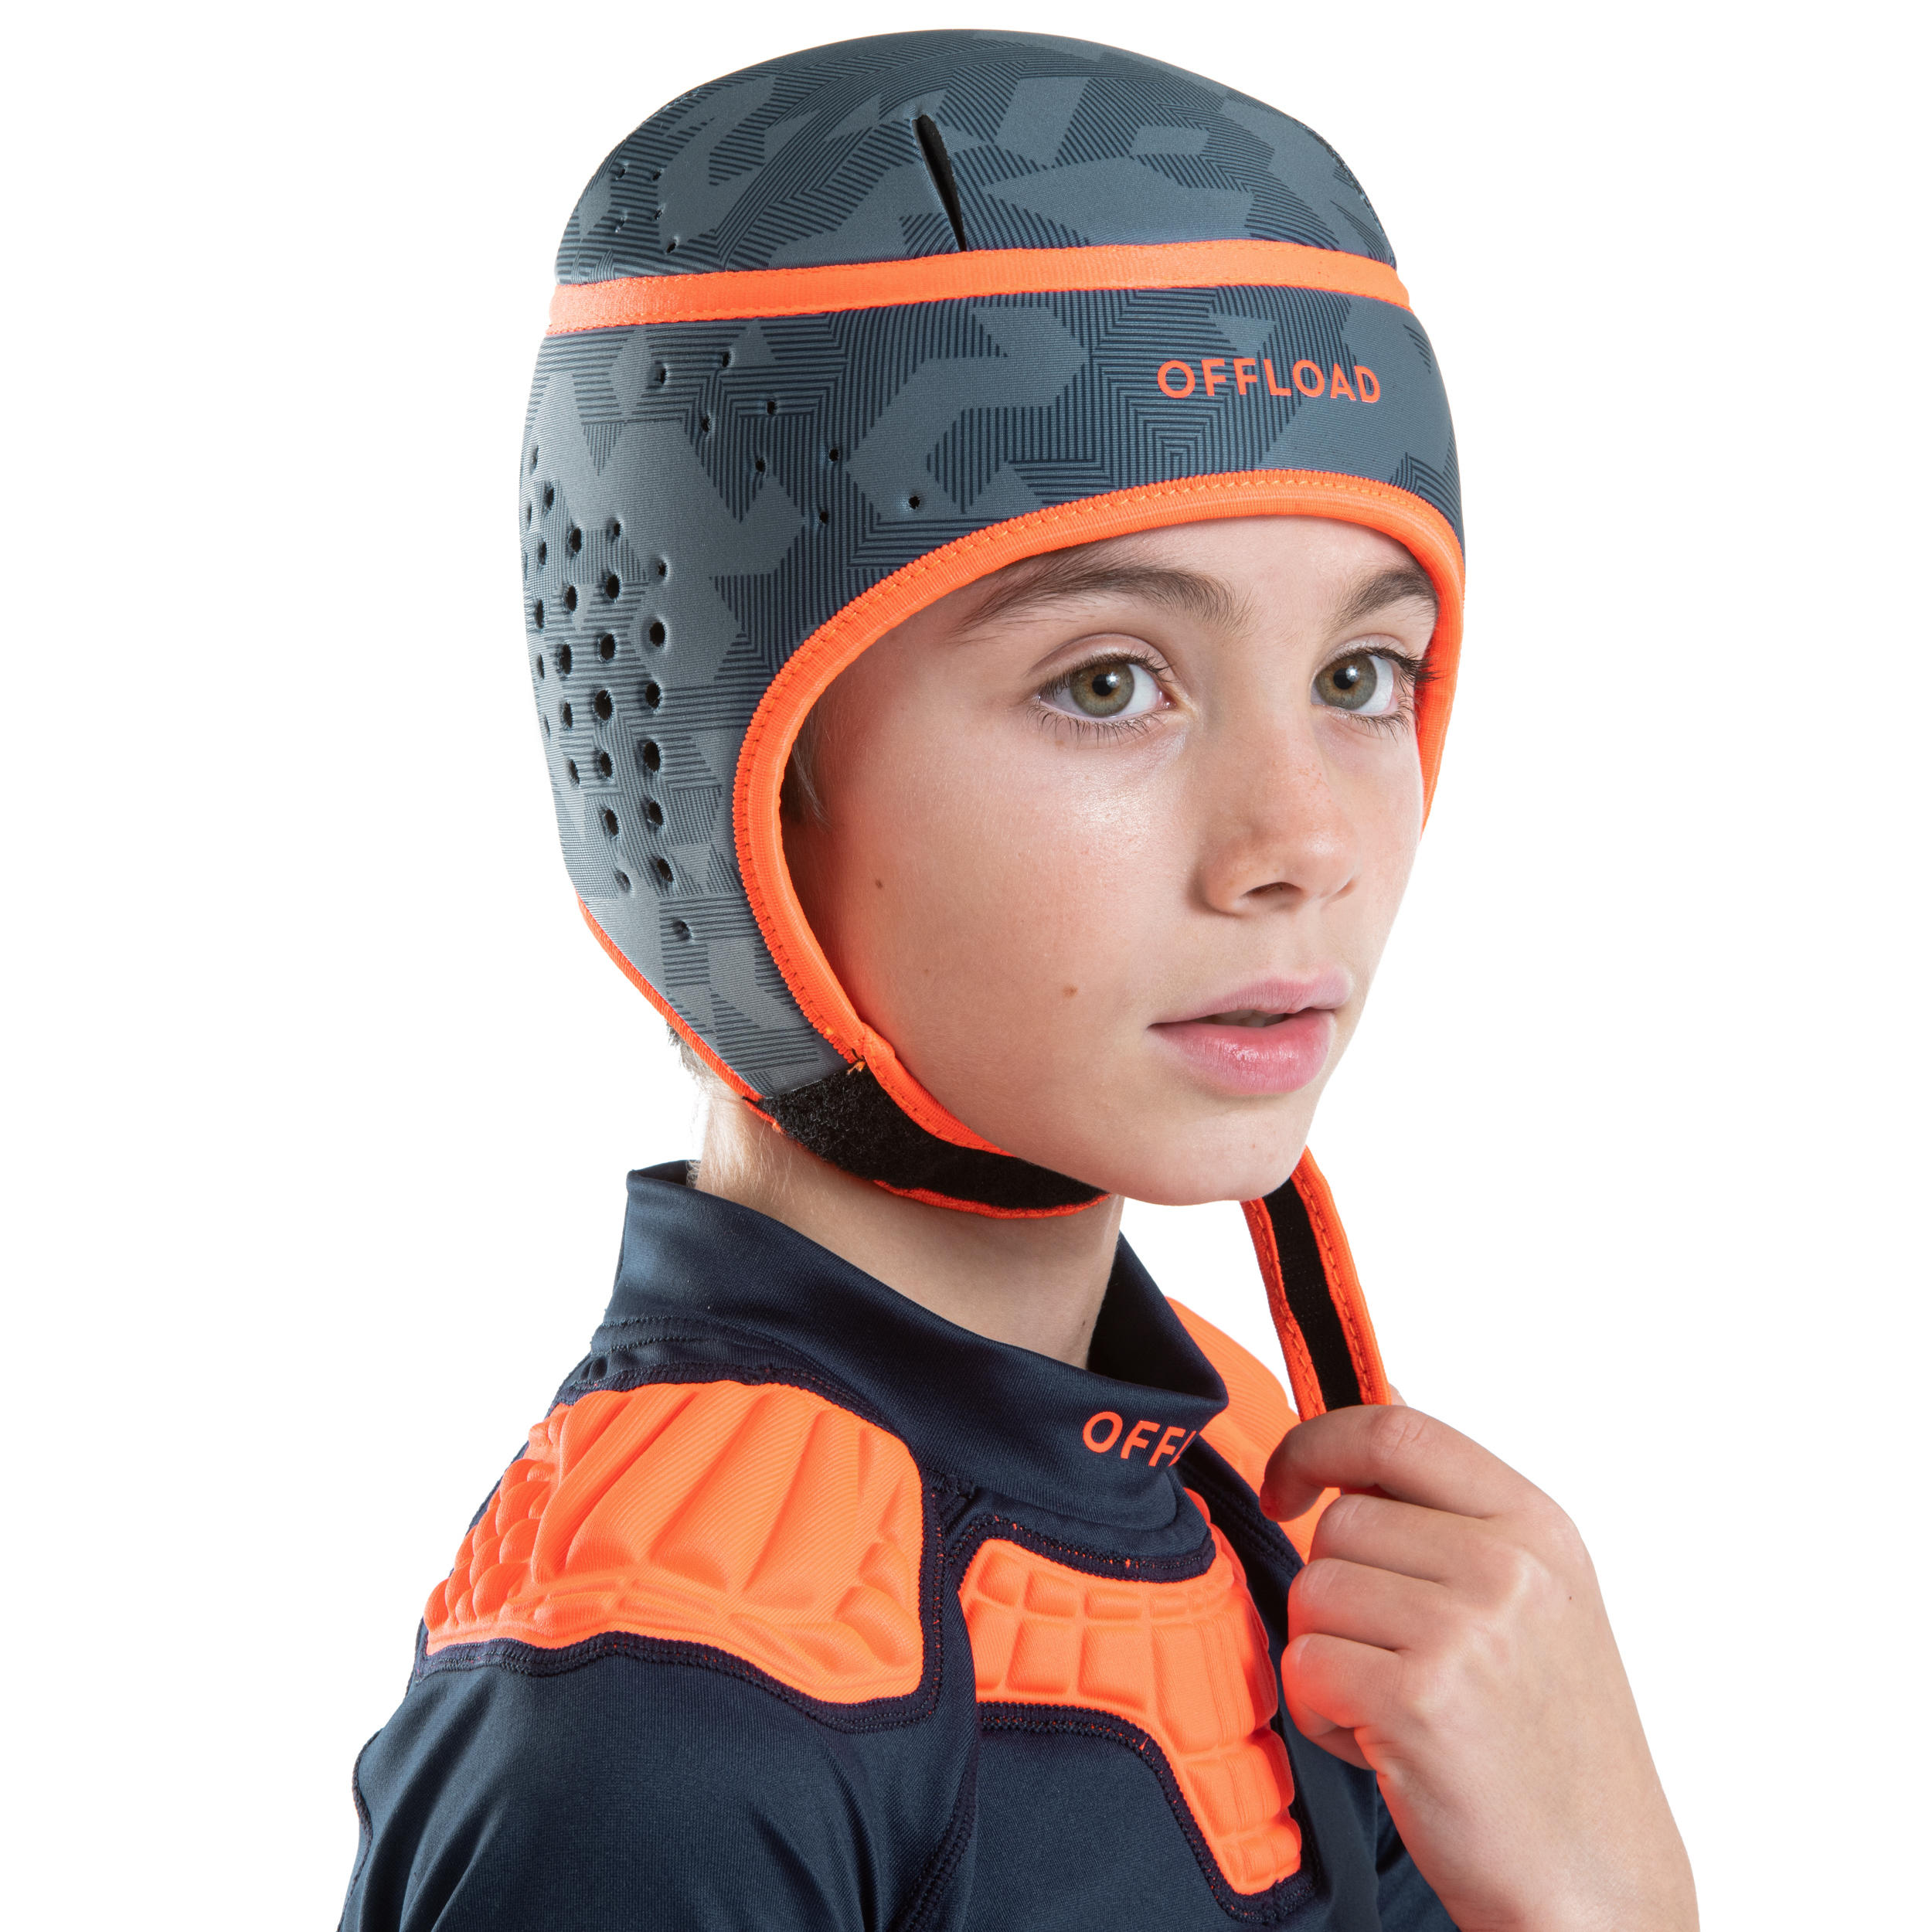 Xpccj Rugby-Kopfschutz für Kinder Rugby-Kopfschutz für verschiedene Sportarten